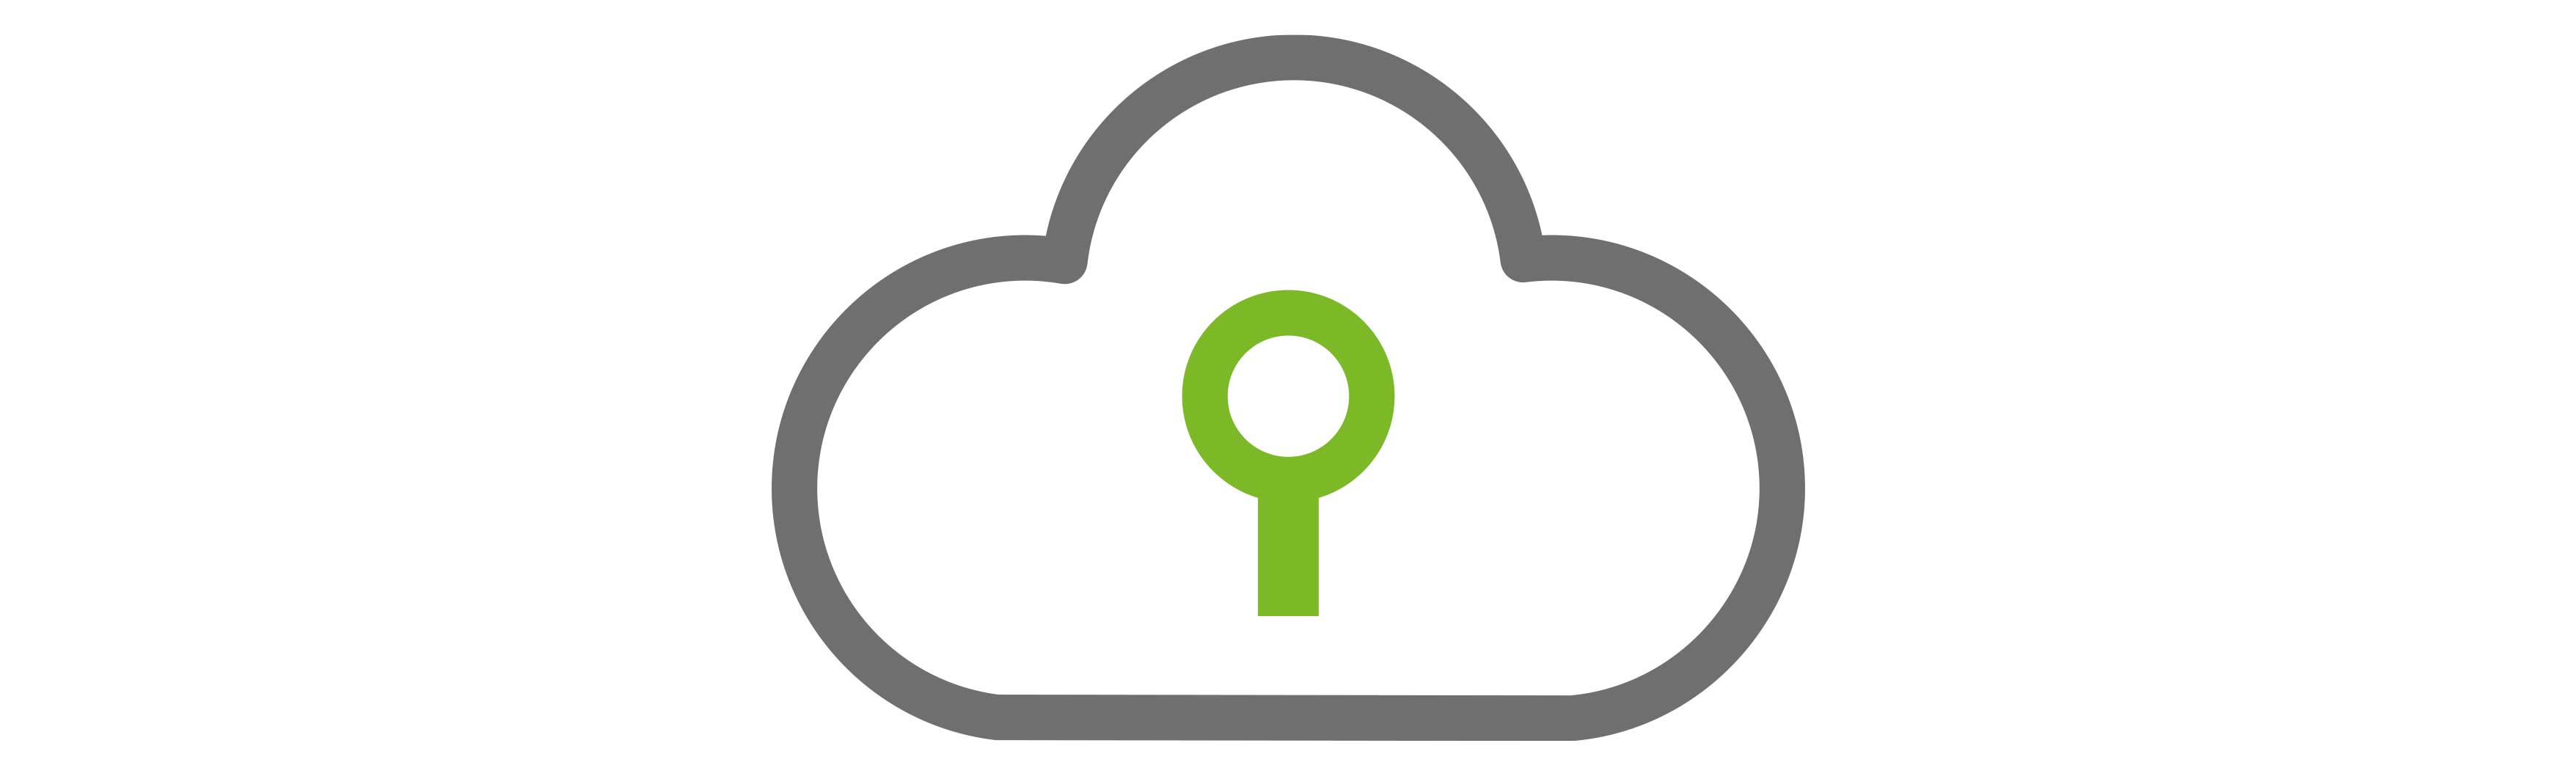 Licencia agente copia de seguridad en la nube + 1 Tb de almacenamiento en la nube de Valorista para Office 365